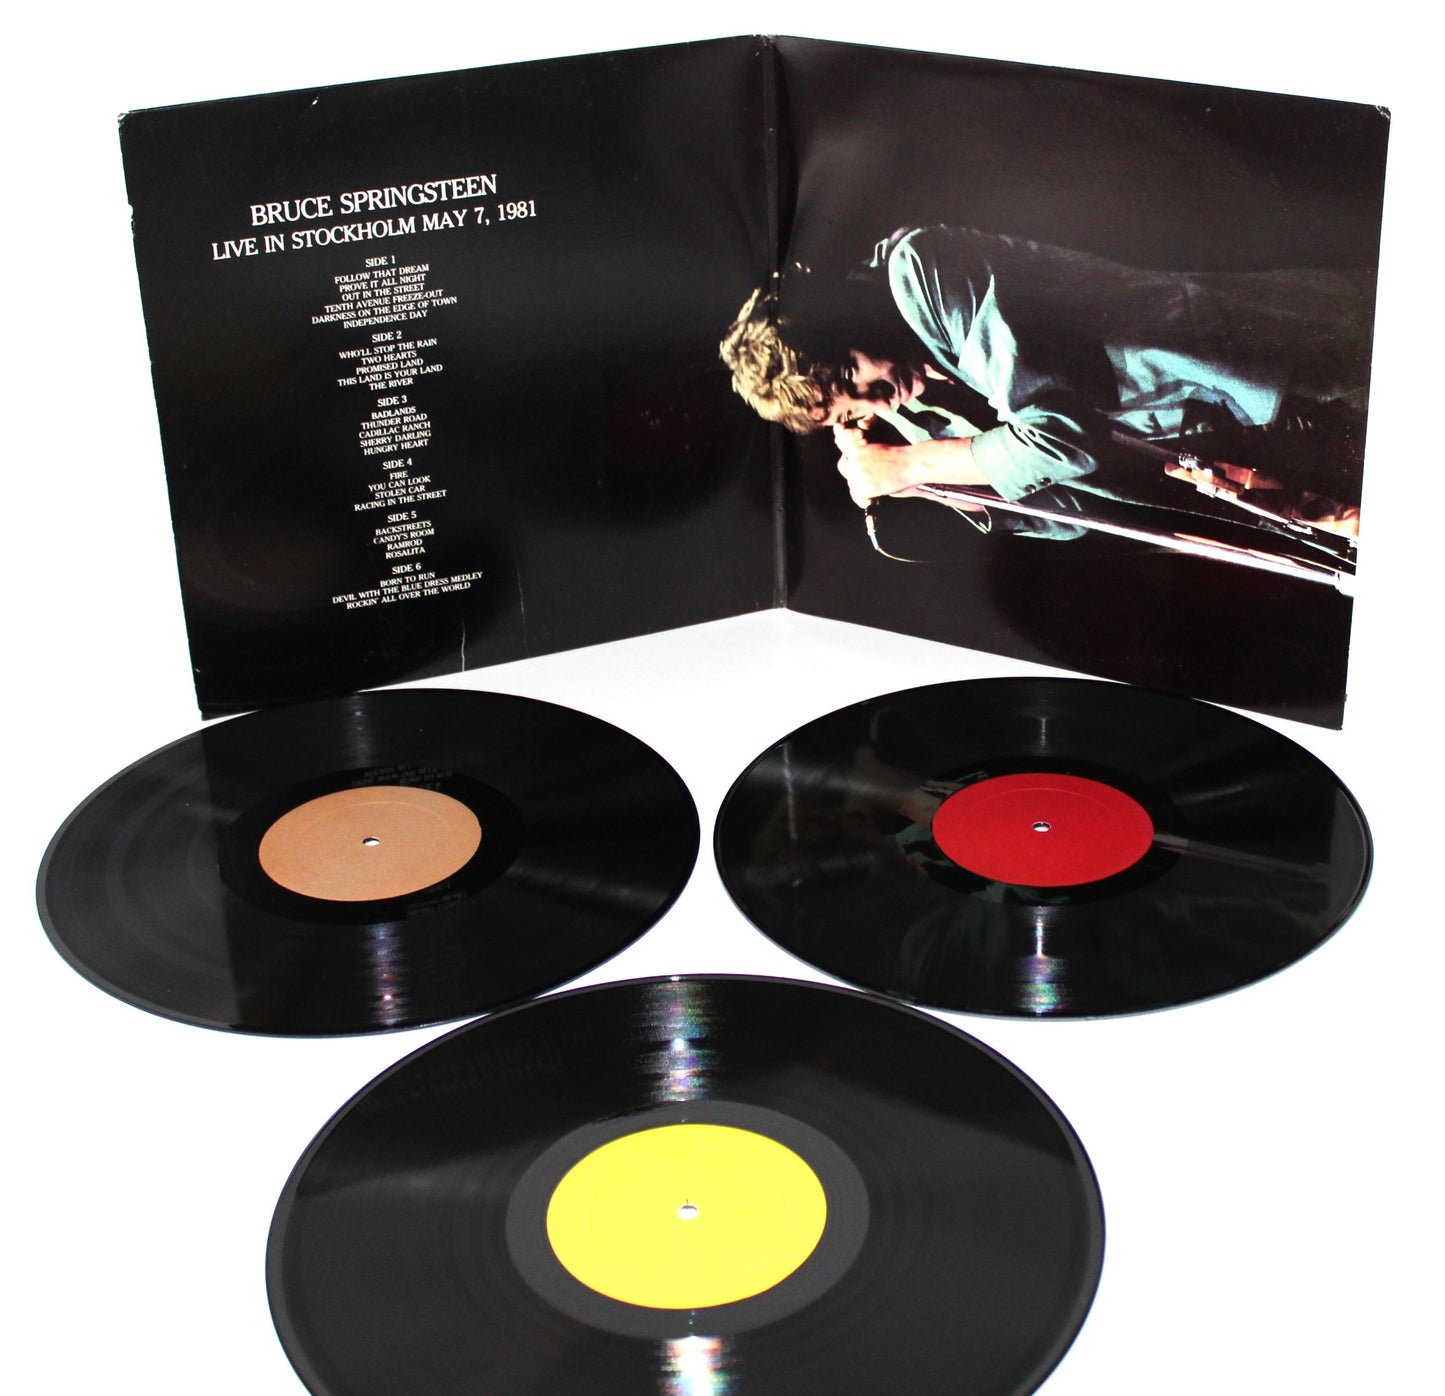 Bruce Springsteen - Follow That Dream - 3 Vinyl LPs – Near Mint Unofficial Vinyl